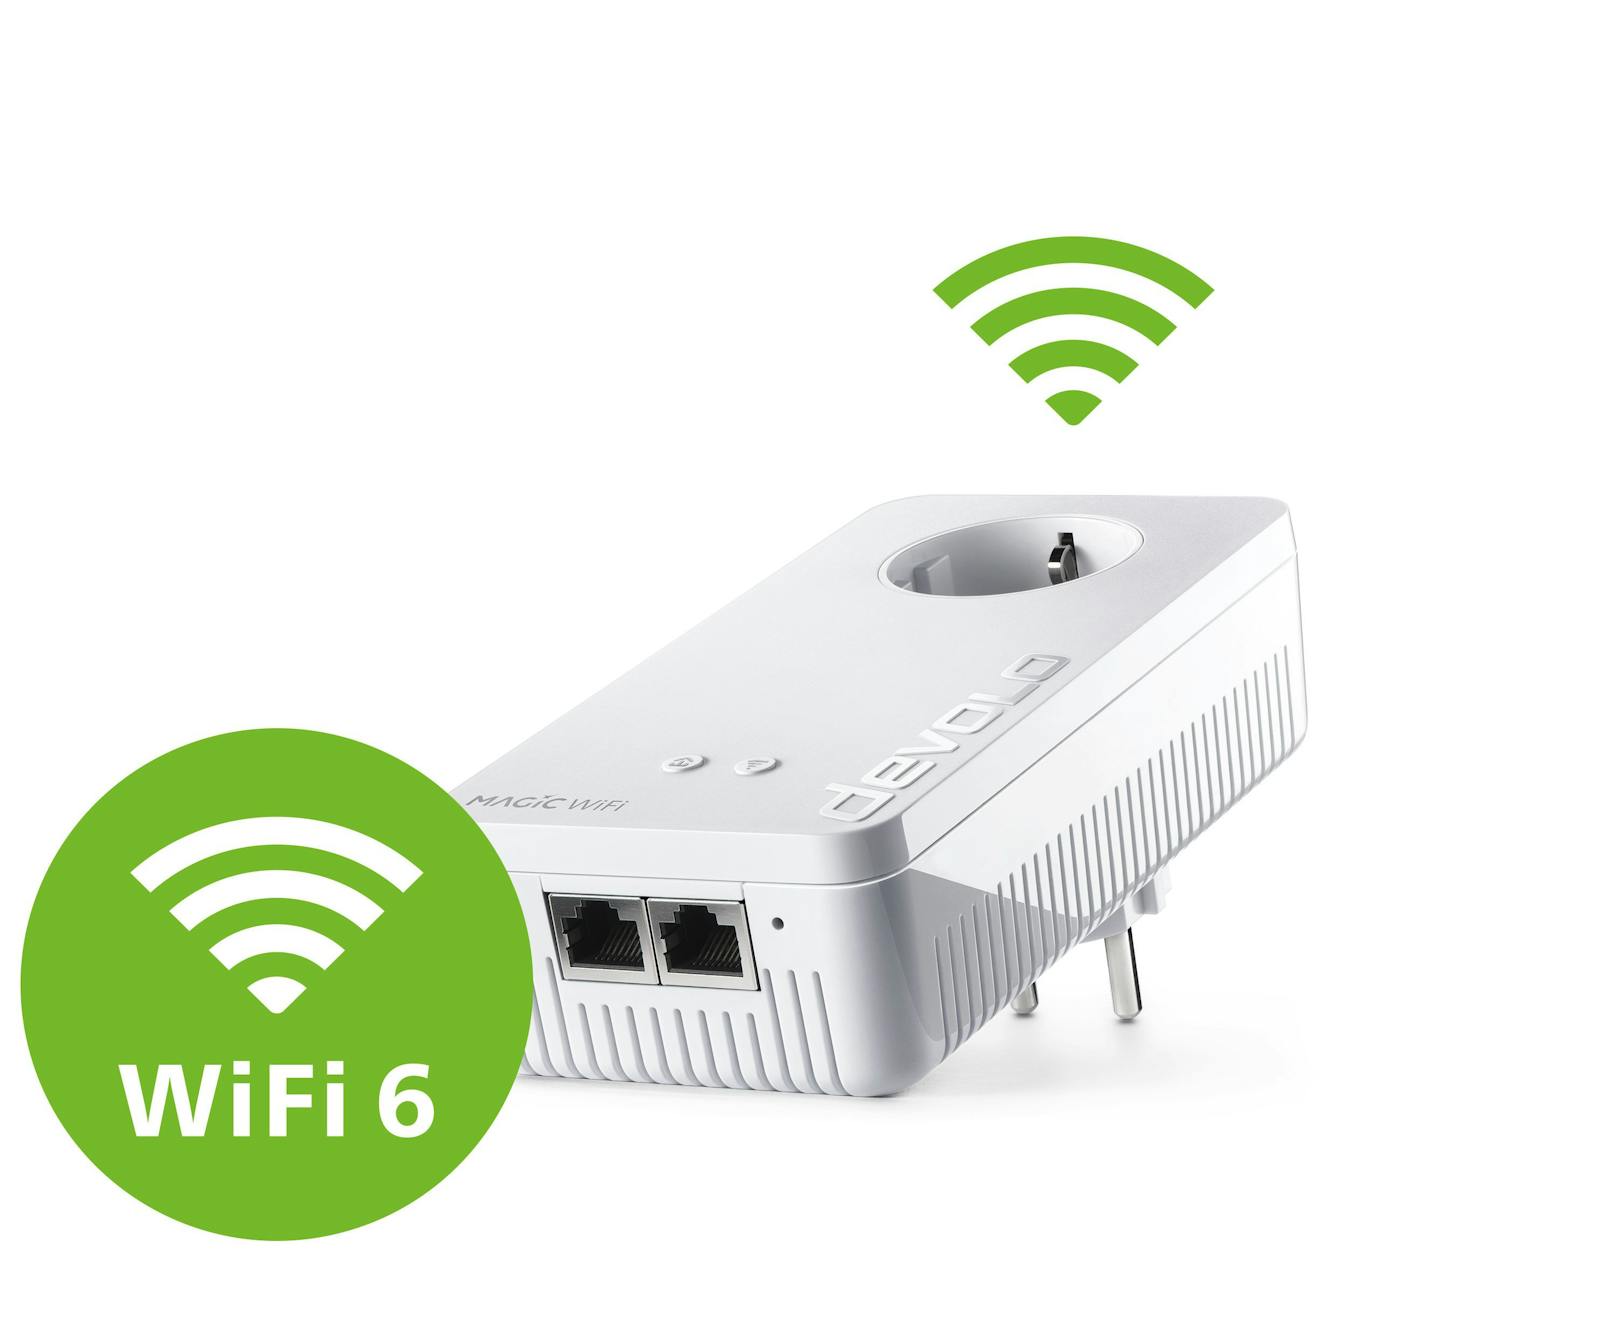 Die verfügbare Datenrate wird durch WiFi 6 nämlich annähernd verdoppelt. Verbessert wurden sowohl das 5 GHz-, als auch das 2,4-GHz-Frequenzband.